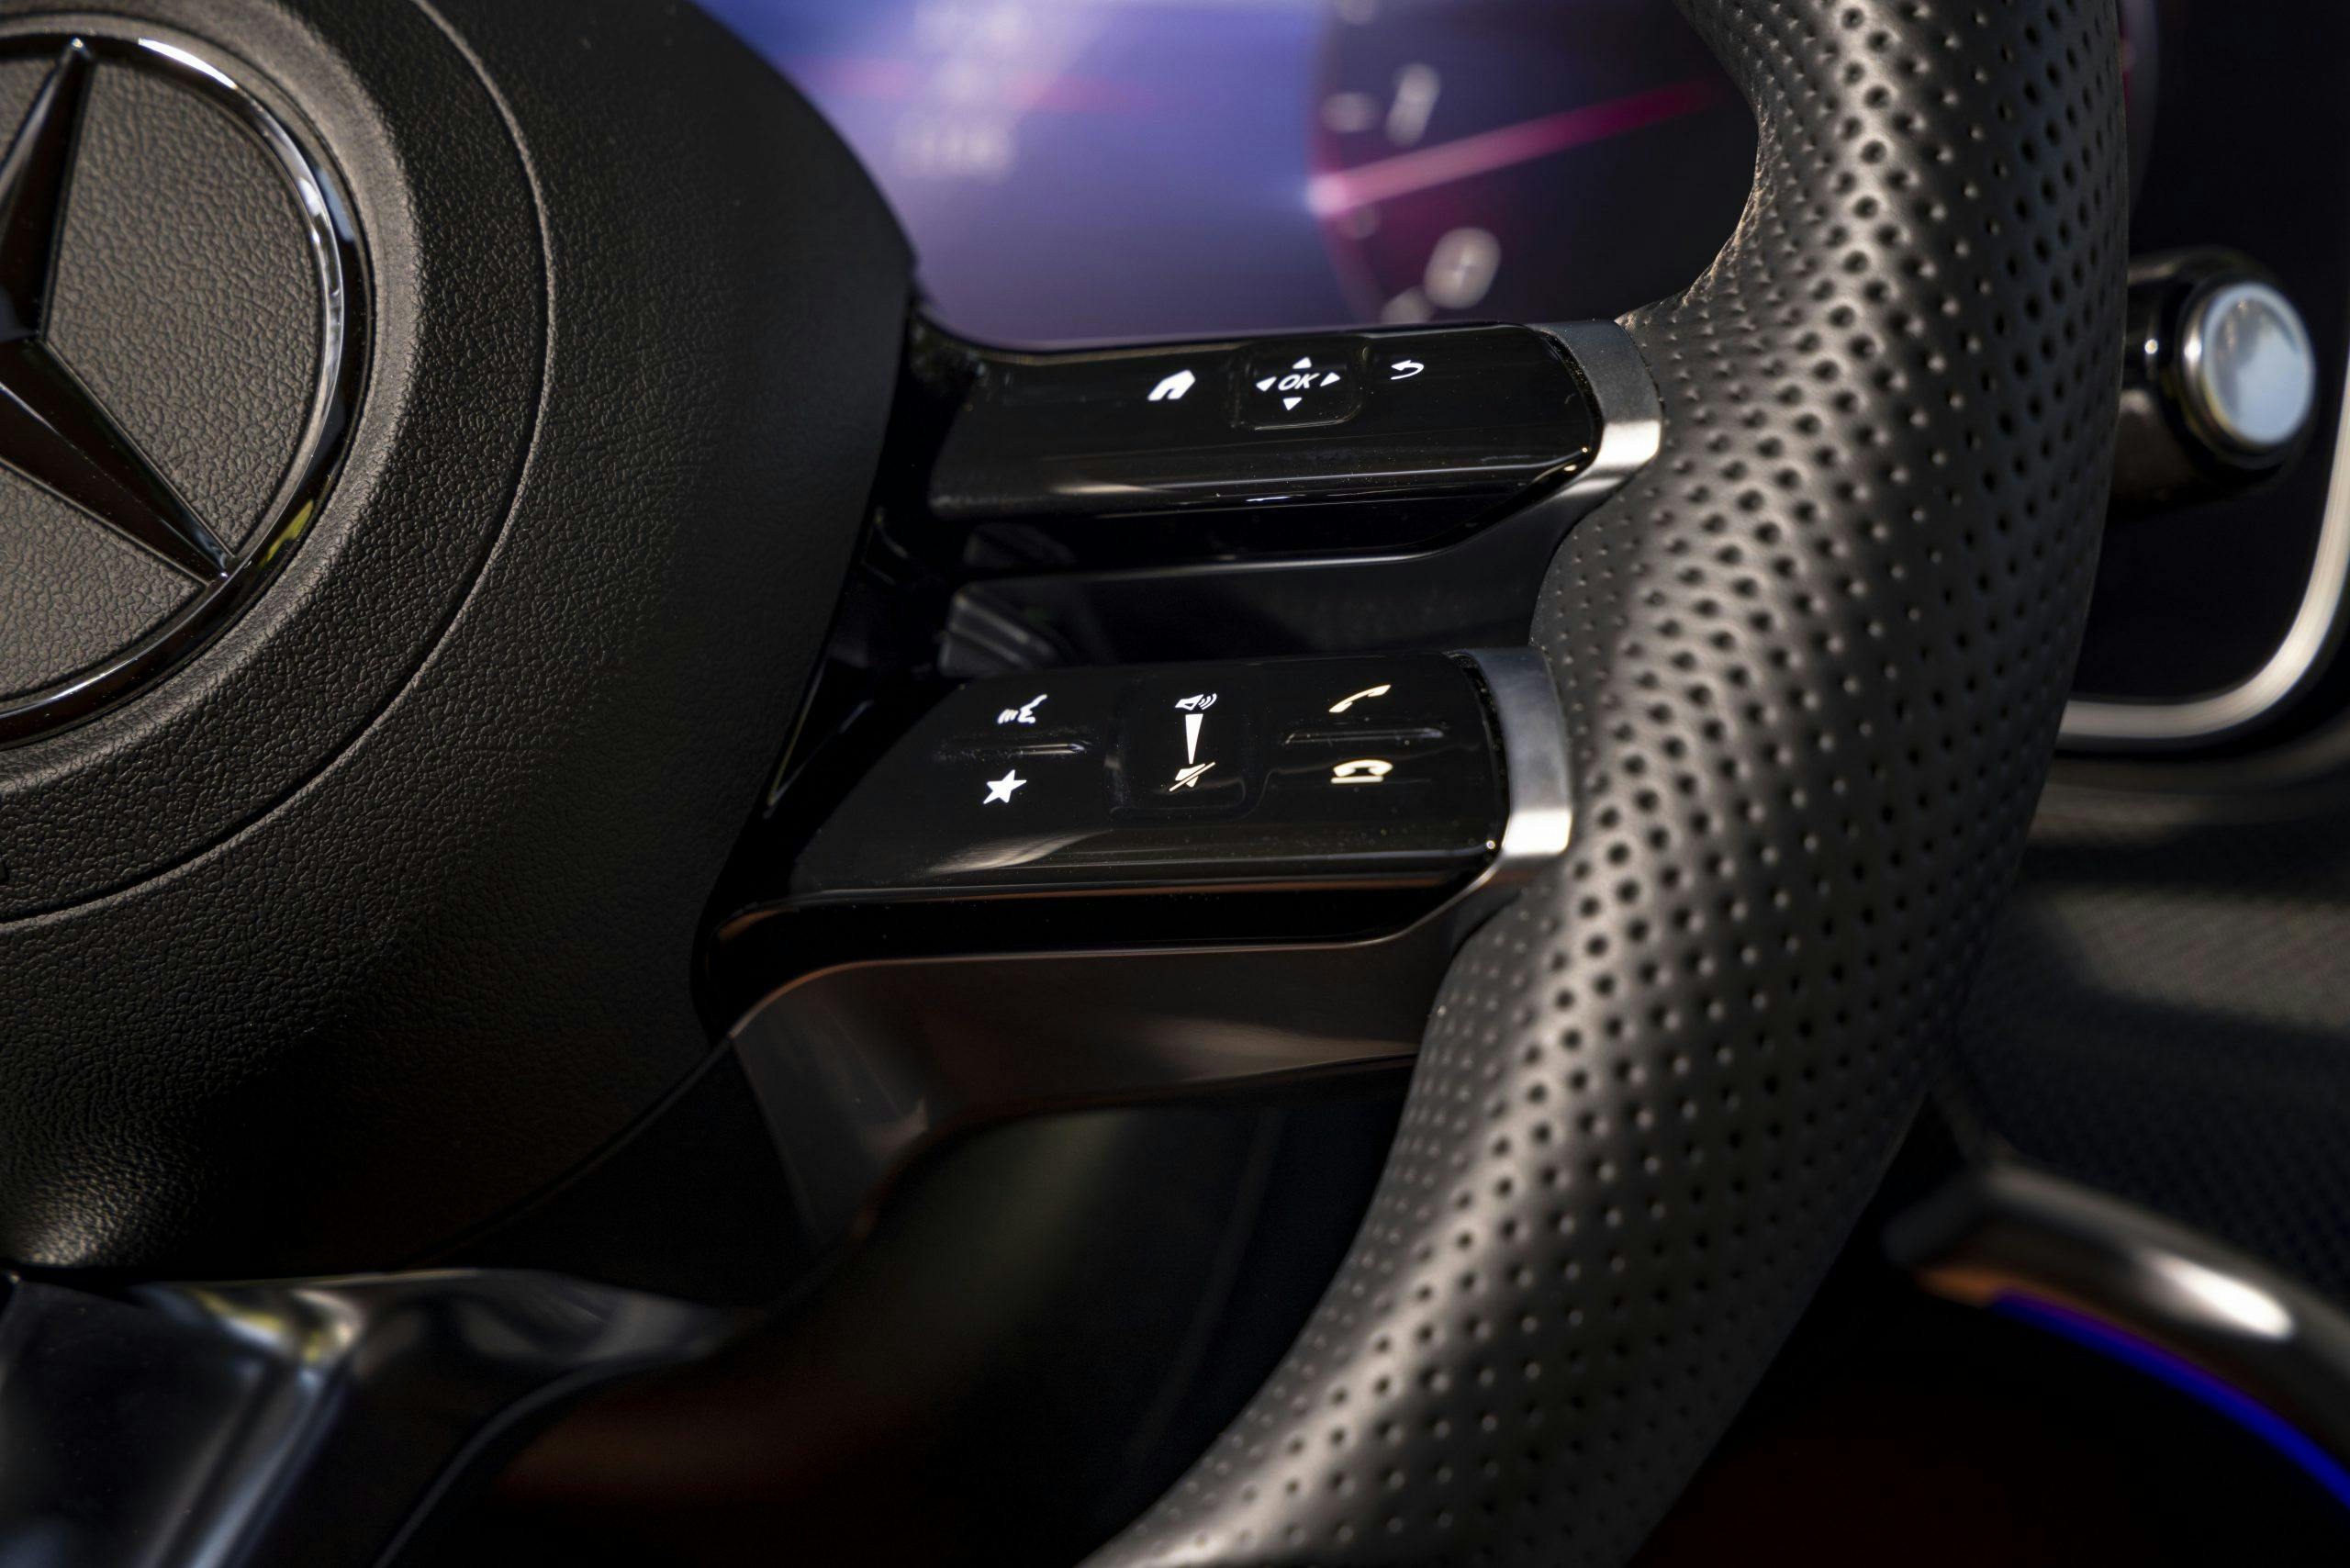 2022 Mercedes-Benz C-Class steering wheel buttons